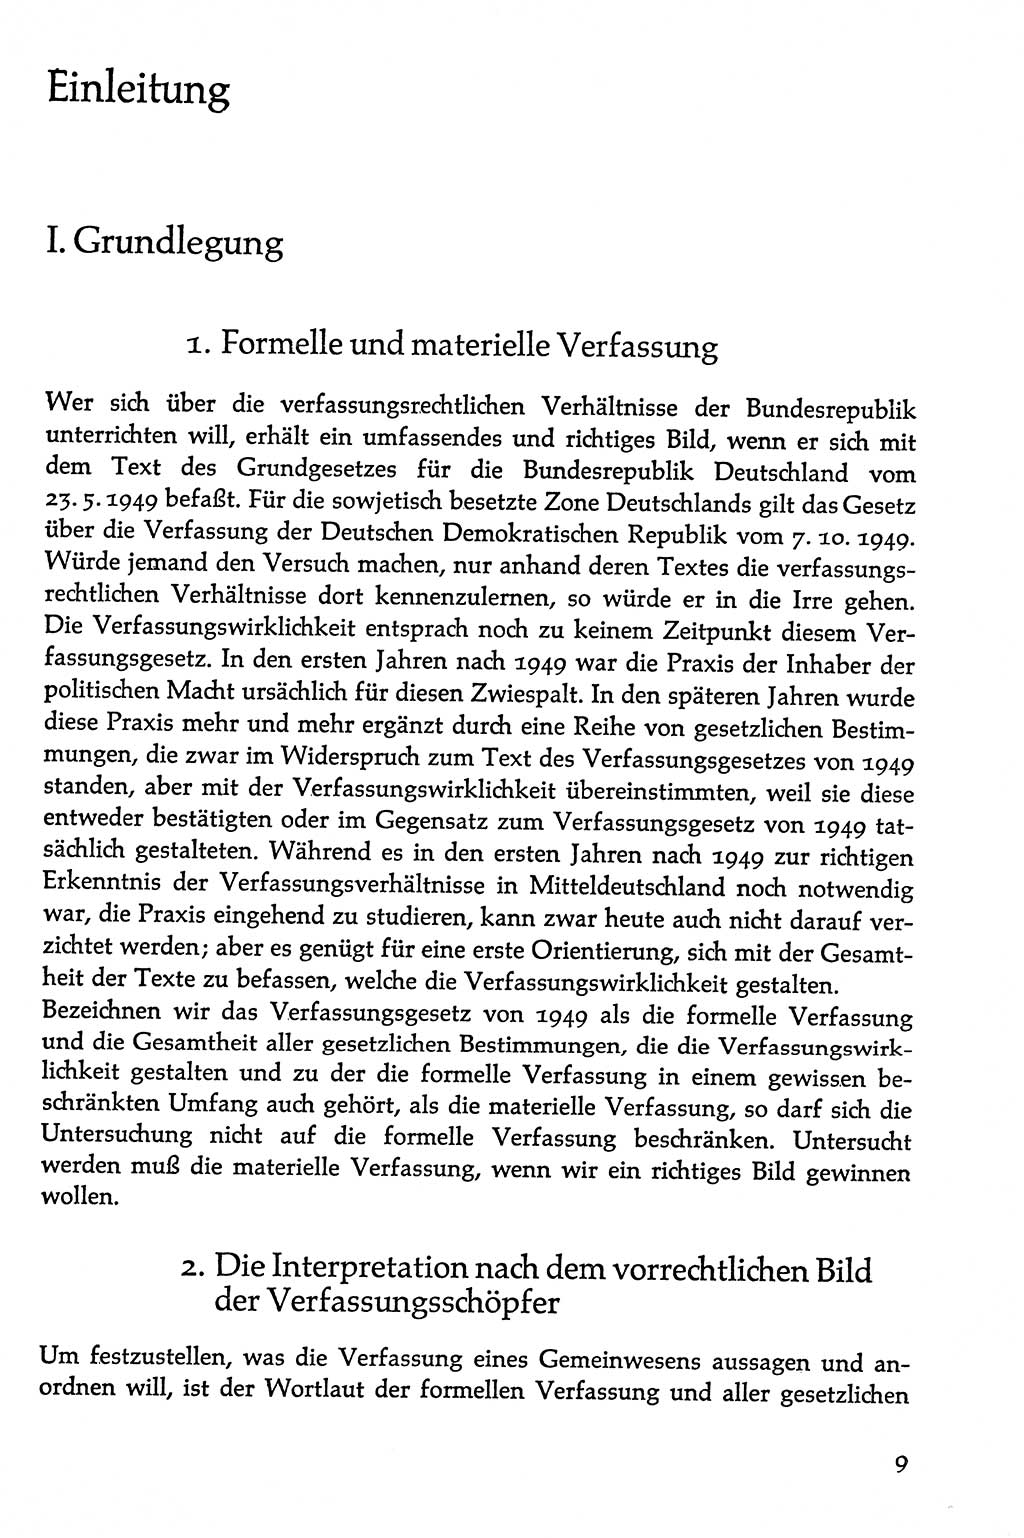 Volksdemokratische Ordnung in Mitteldeutschland [Deutsche Demokratische Republik (DDR)], Texte zur verfassungsrechtlichen Situation 1963, Seite 9 (Volksdem. Ordn. Md. DDR 1963, S. 9)